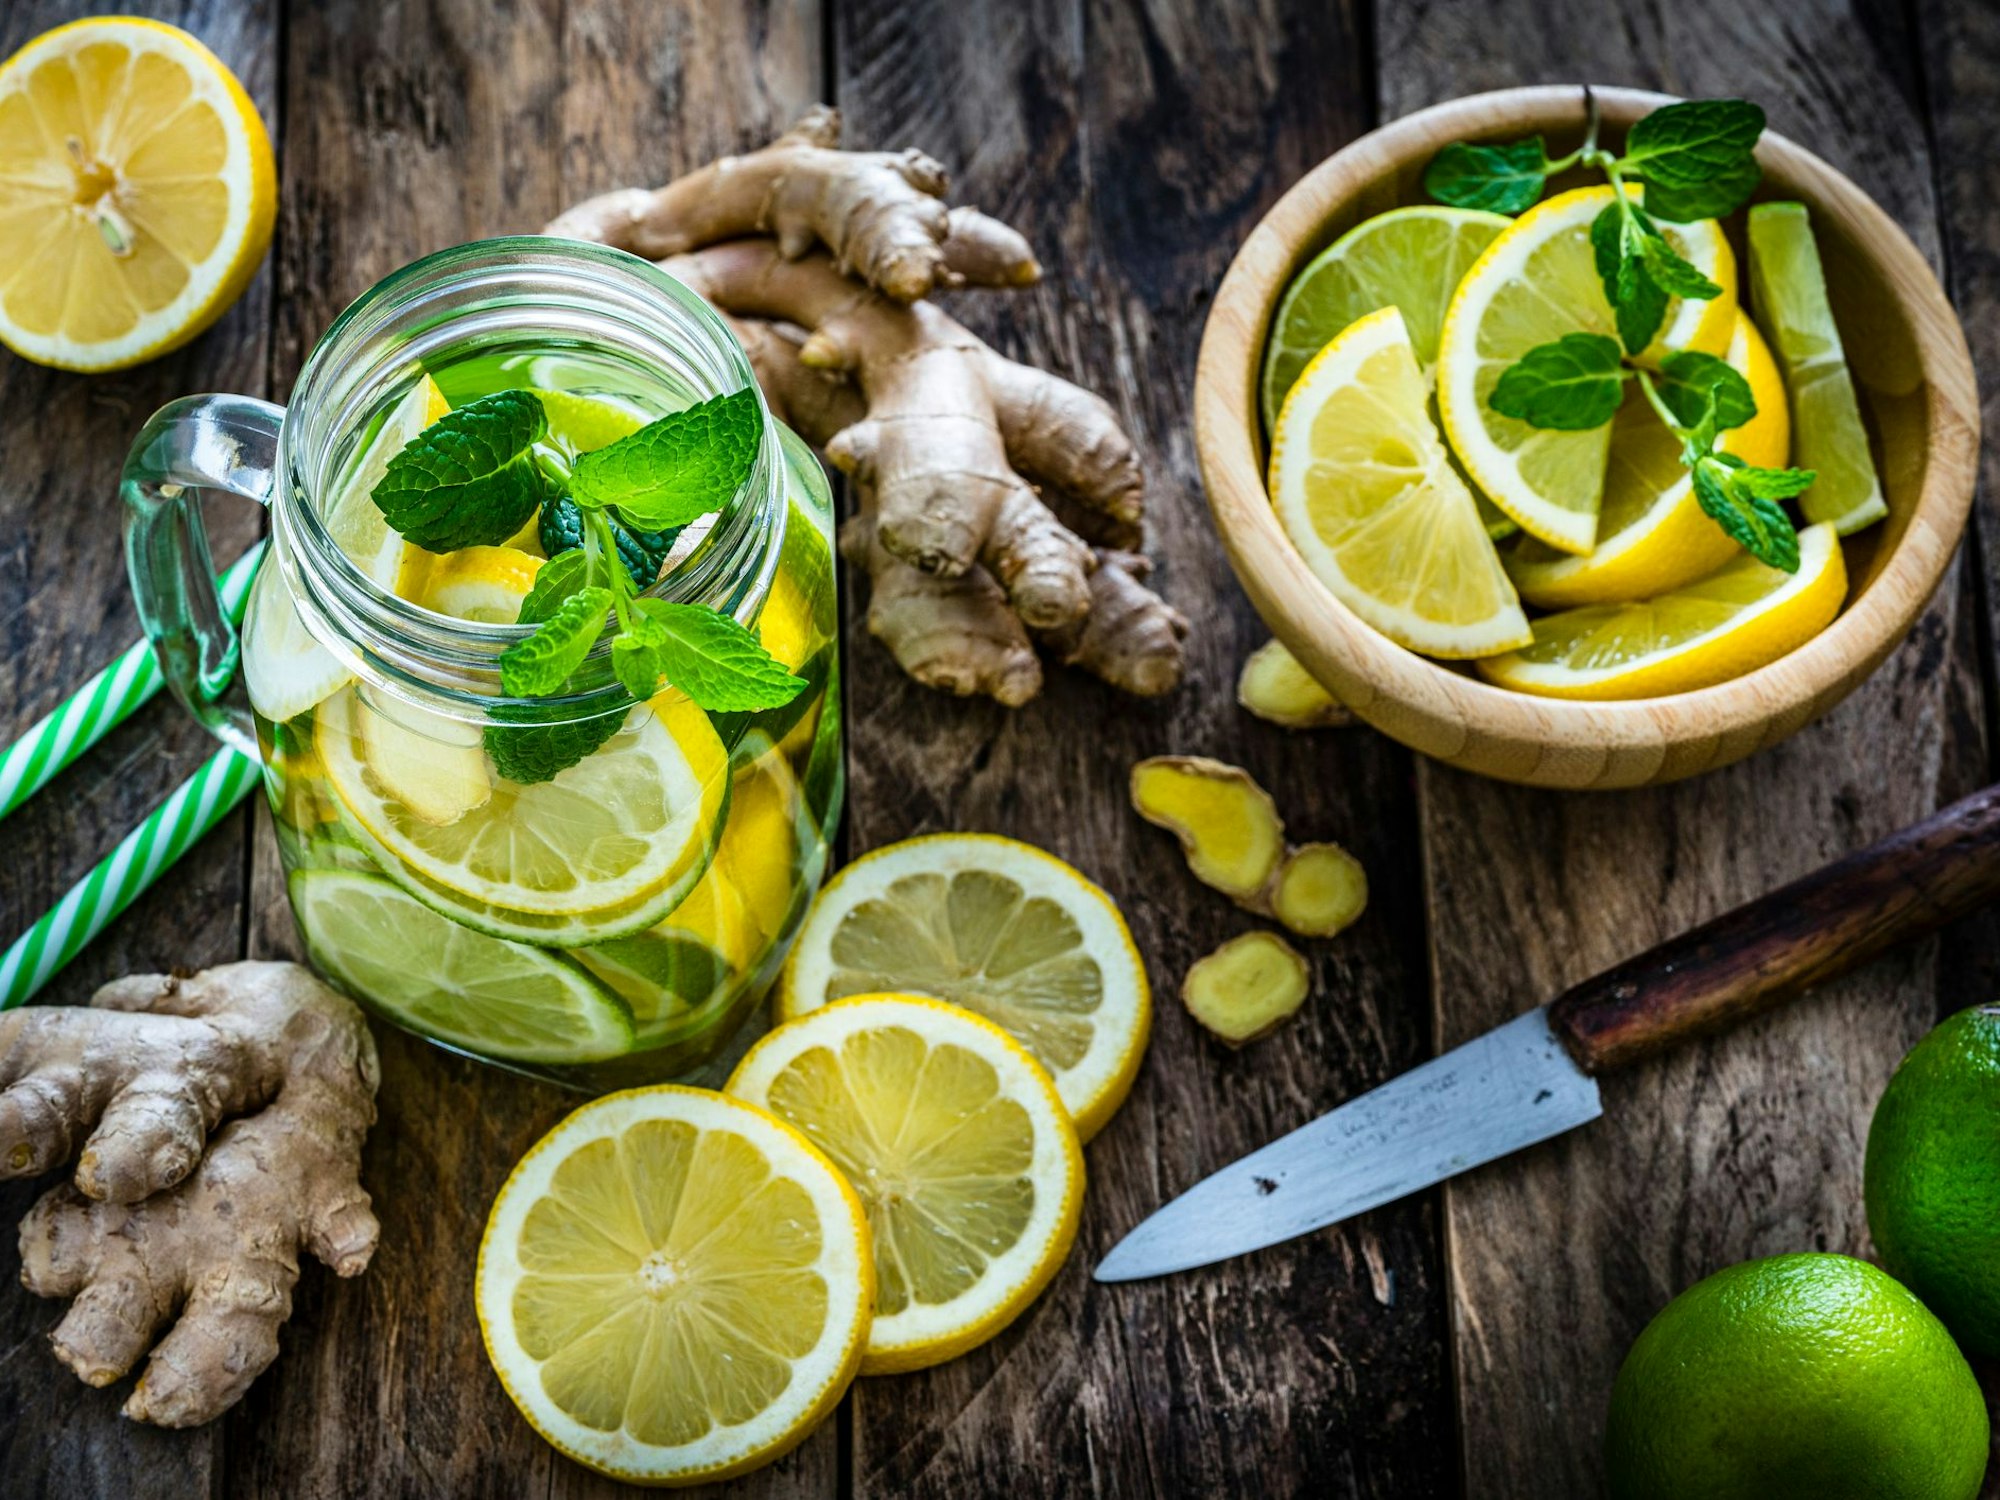 Zitrone, Ingwer und Pfefferminze sind bewährte Hausmittel gegen Übelkeit.